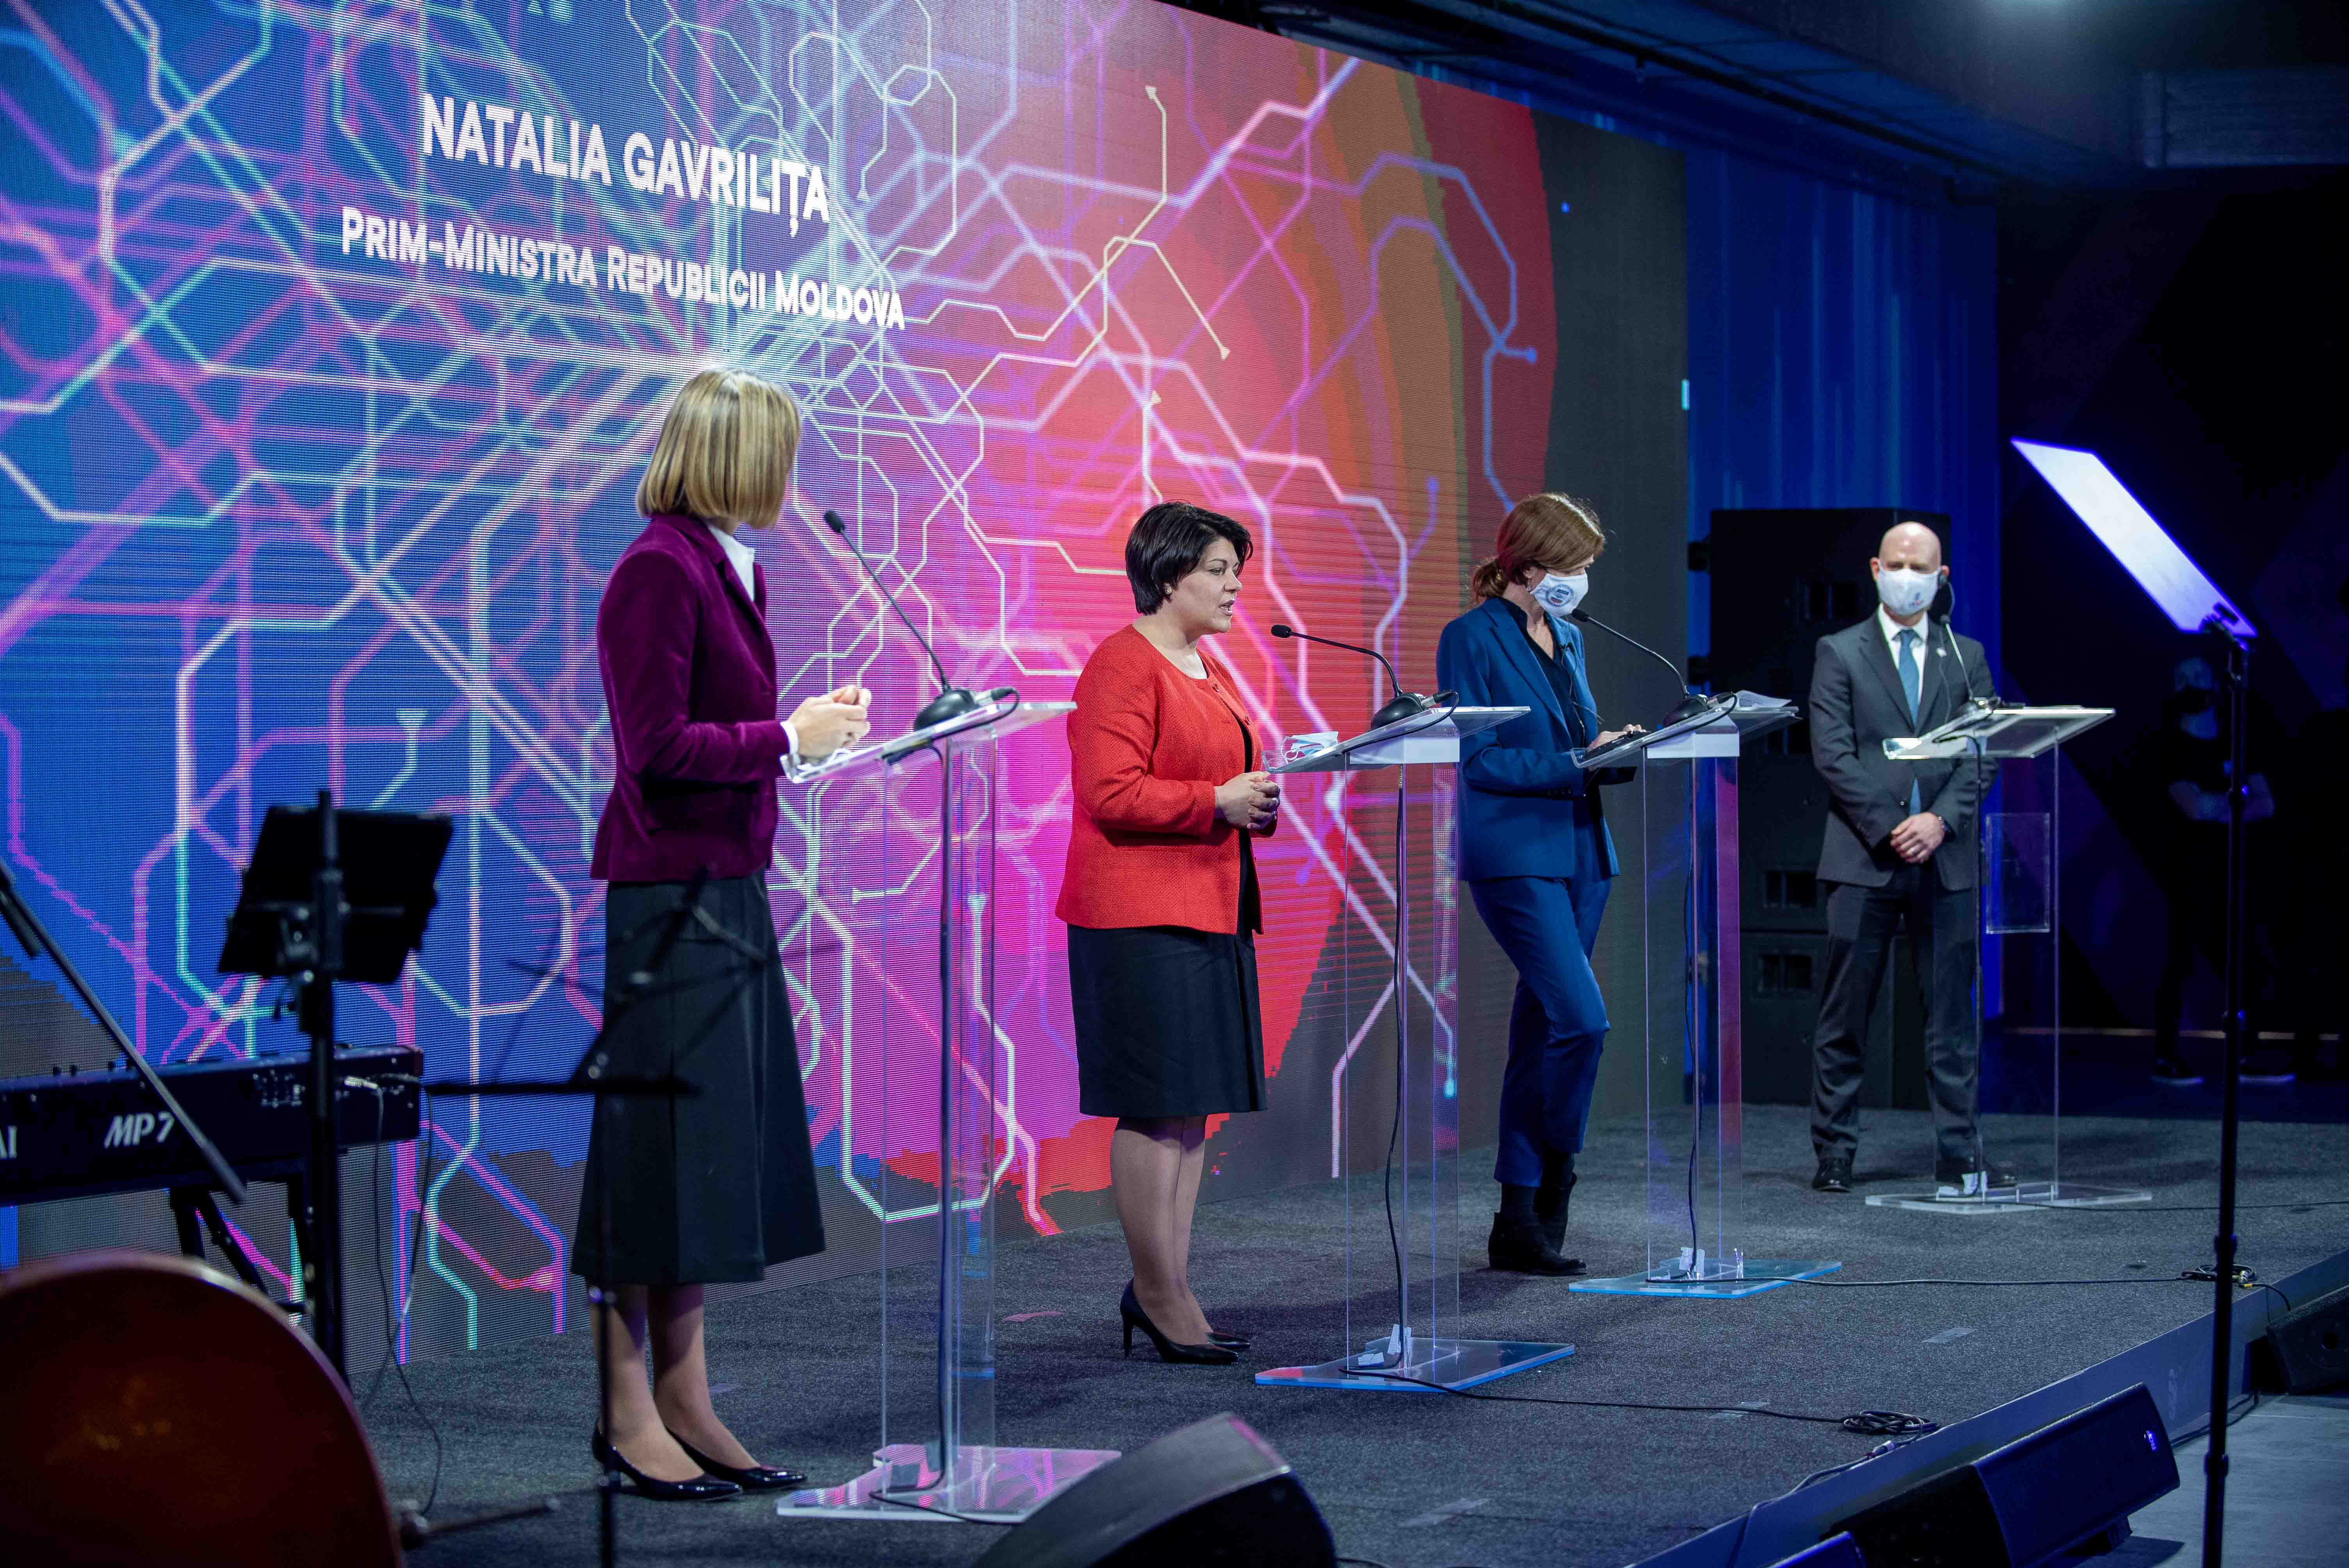 Natalia Gavrilița: Digitalizarea și inovarea sunt priorități cheie pentru Guvern